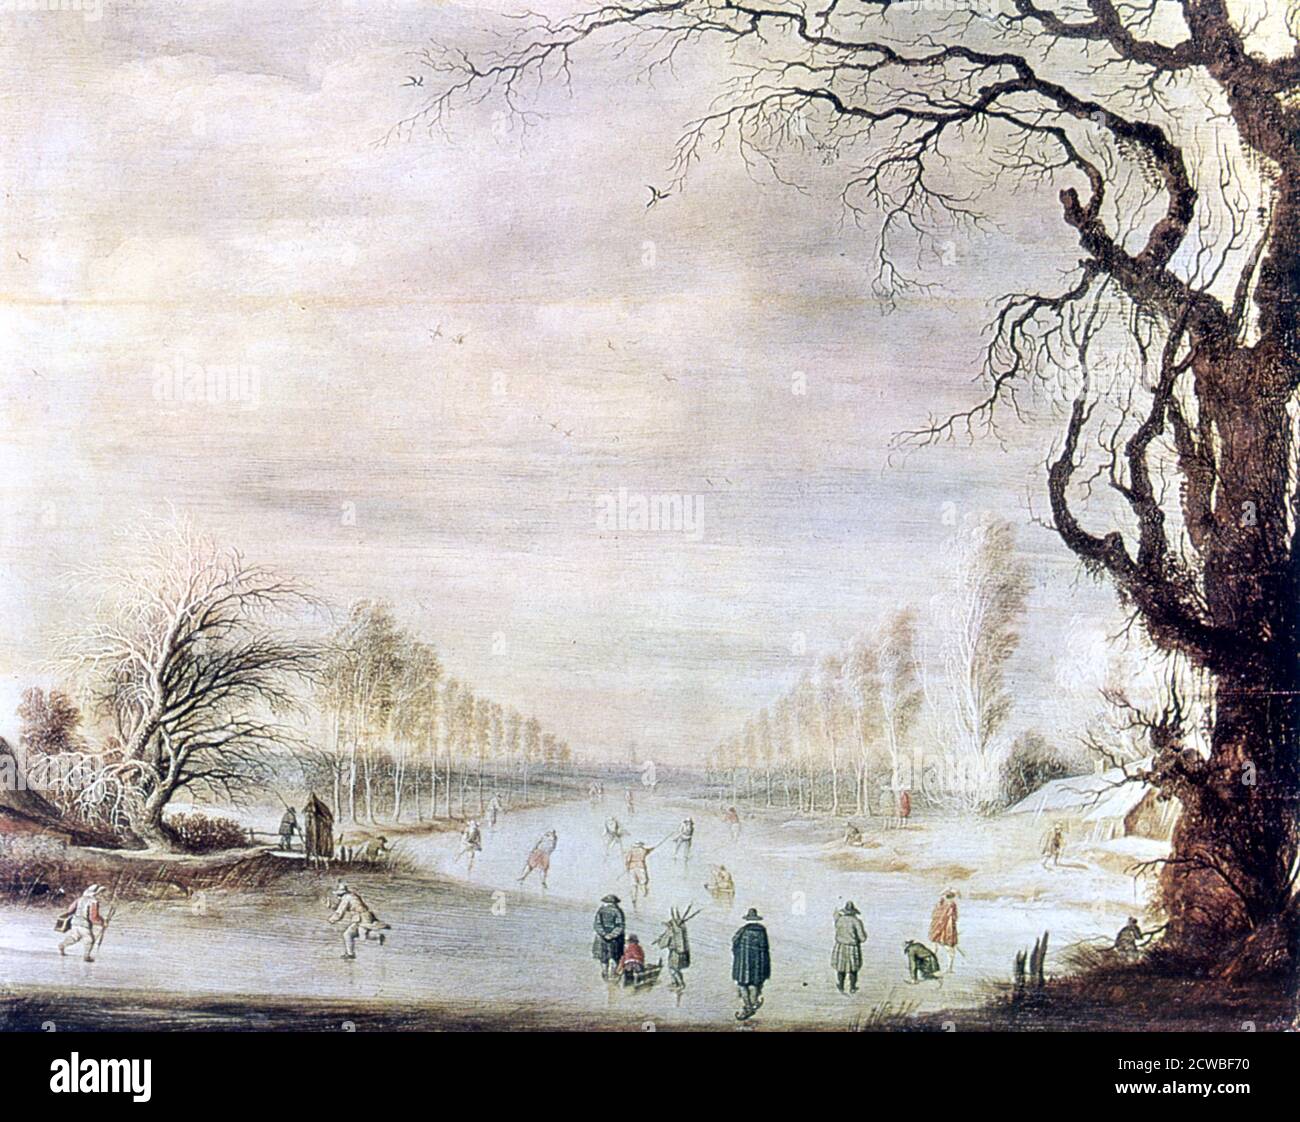 Eine Winterlandschaft mit Eisläufern', c1606-1643. Künstler: Gysbrecht Leytens. Gysbrecht Leytens (1586-1656) war ein flämischer Maler, der sich auf Winterlandschaften spezialisierte. Stockfoto